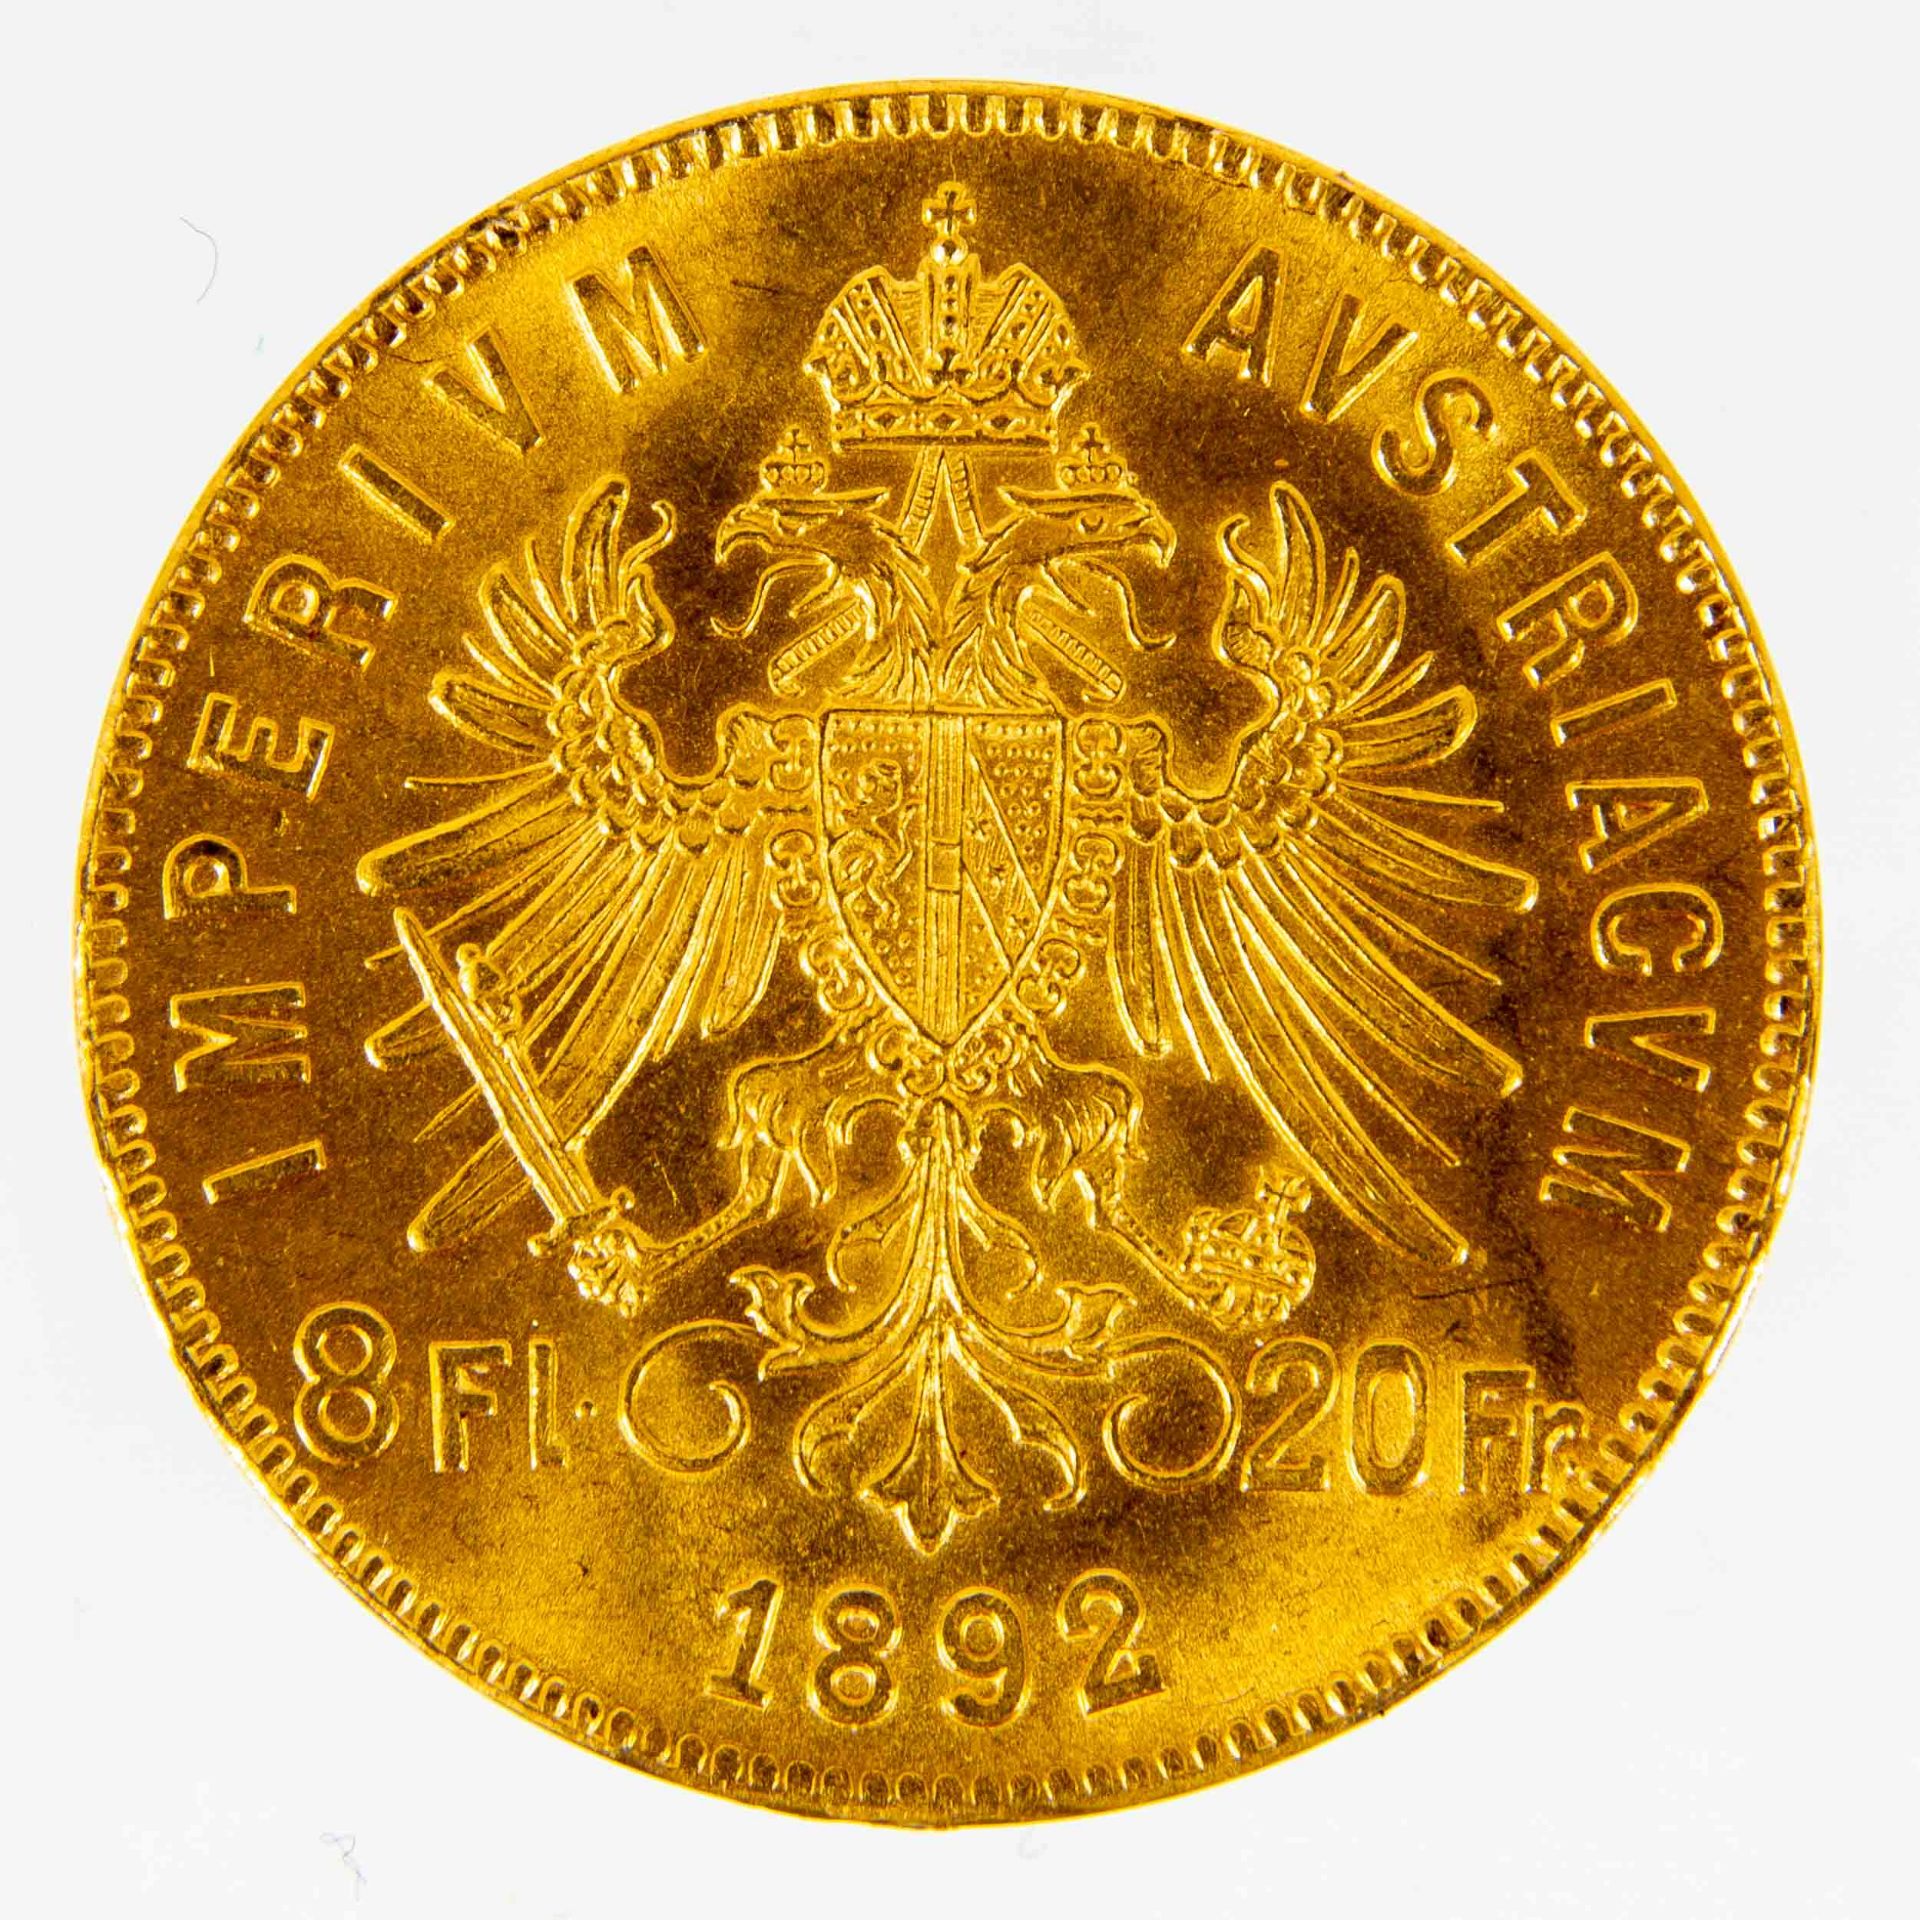 20 Franken/ 8 Florin - 1892 ; ca. 7 gr. 900er Gold, Durchmesser ca. 21 mm. - Image 2 of 2